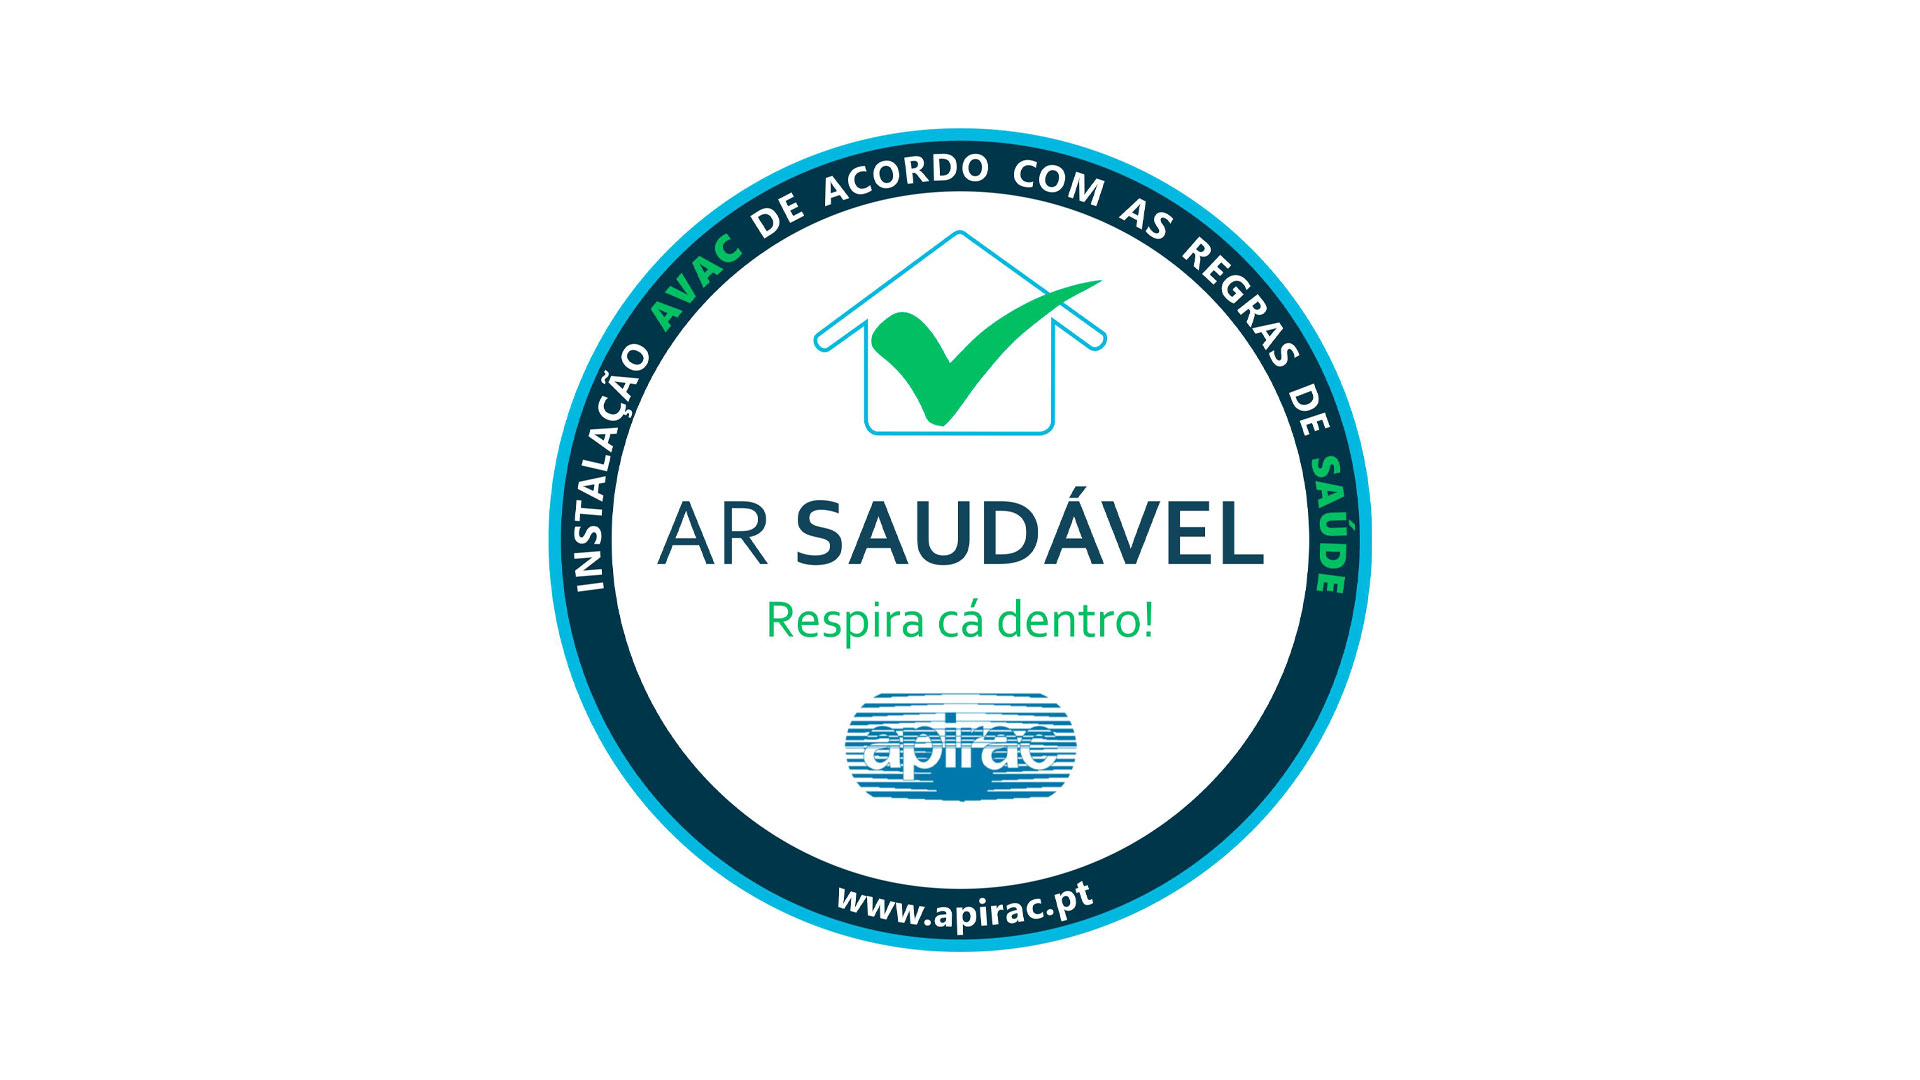 Selo Ar Saudável da APIRAC: garantia de Qualidade do Ar em Edifícios Públicos, comerciais e de serviços